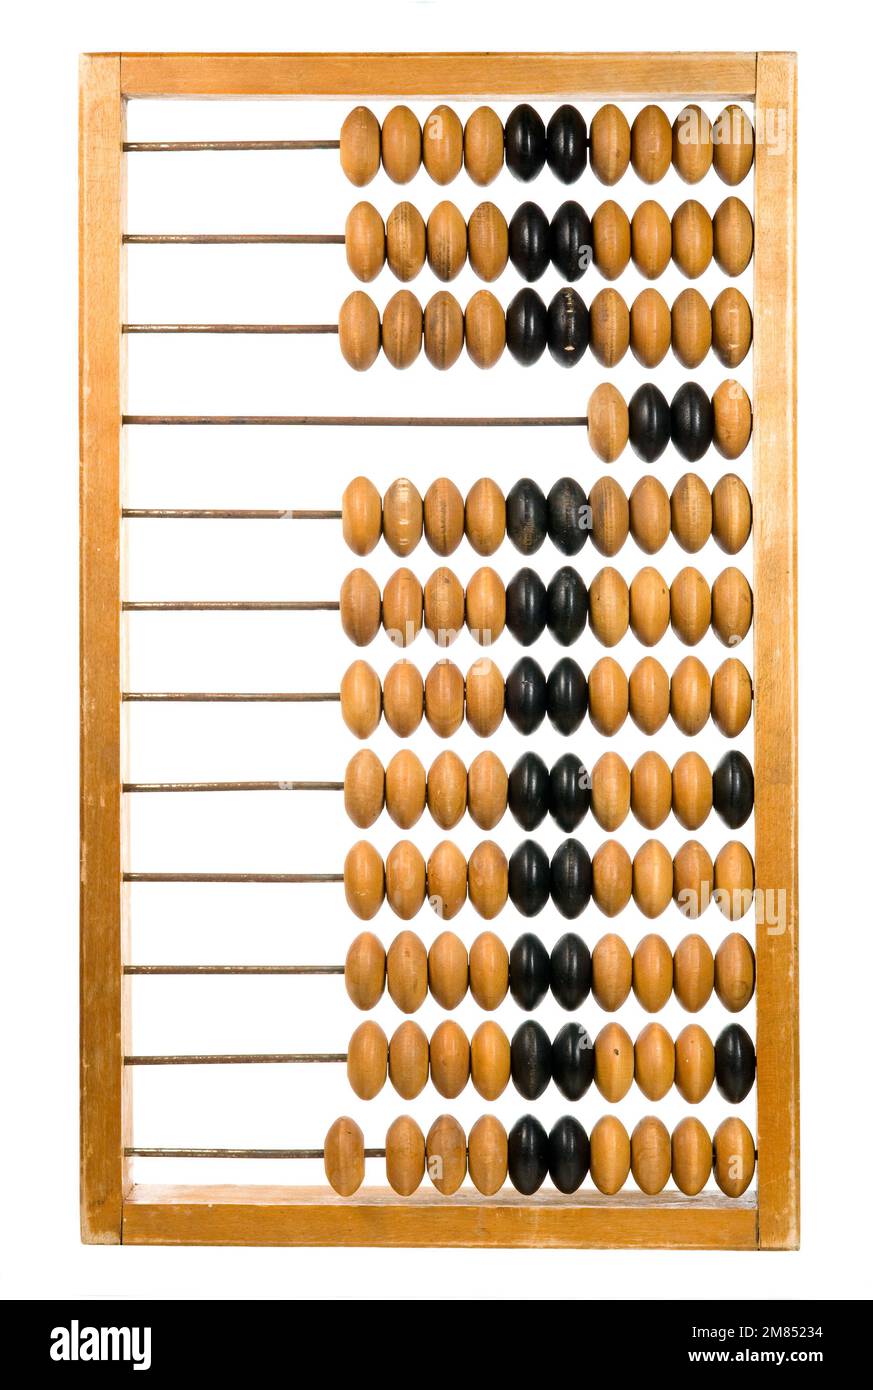 Calculatrice rétro – ancien cadre de comptage en bois Banque D'Images